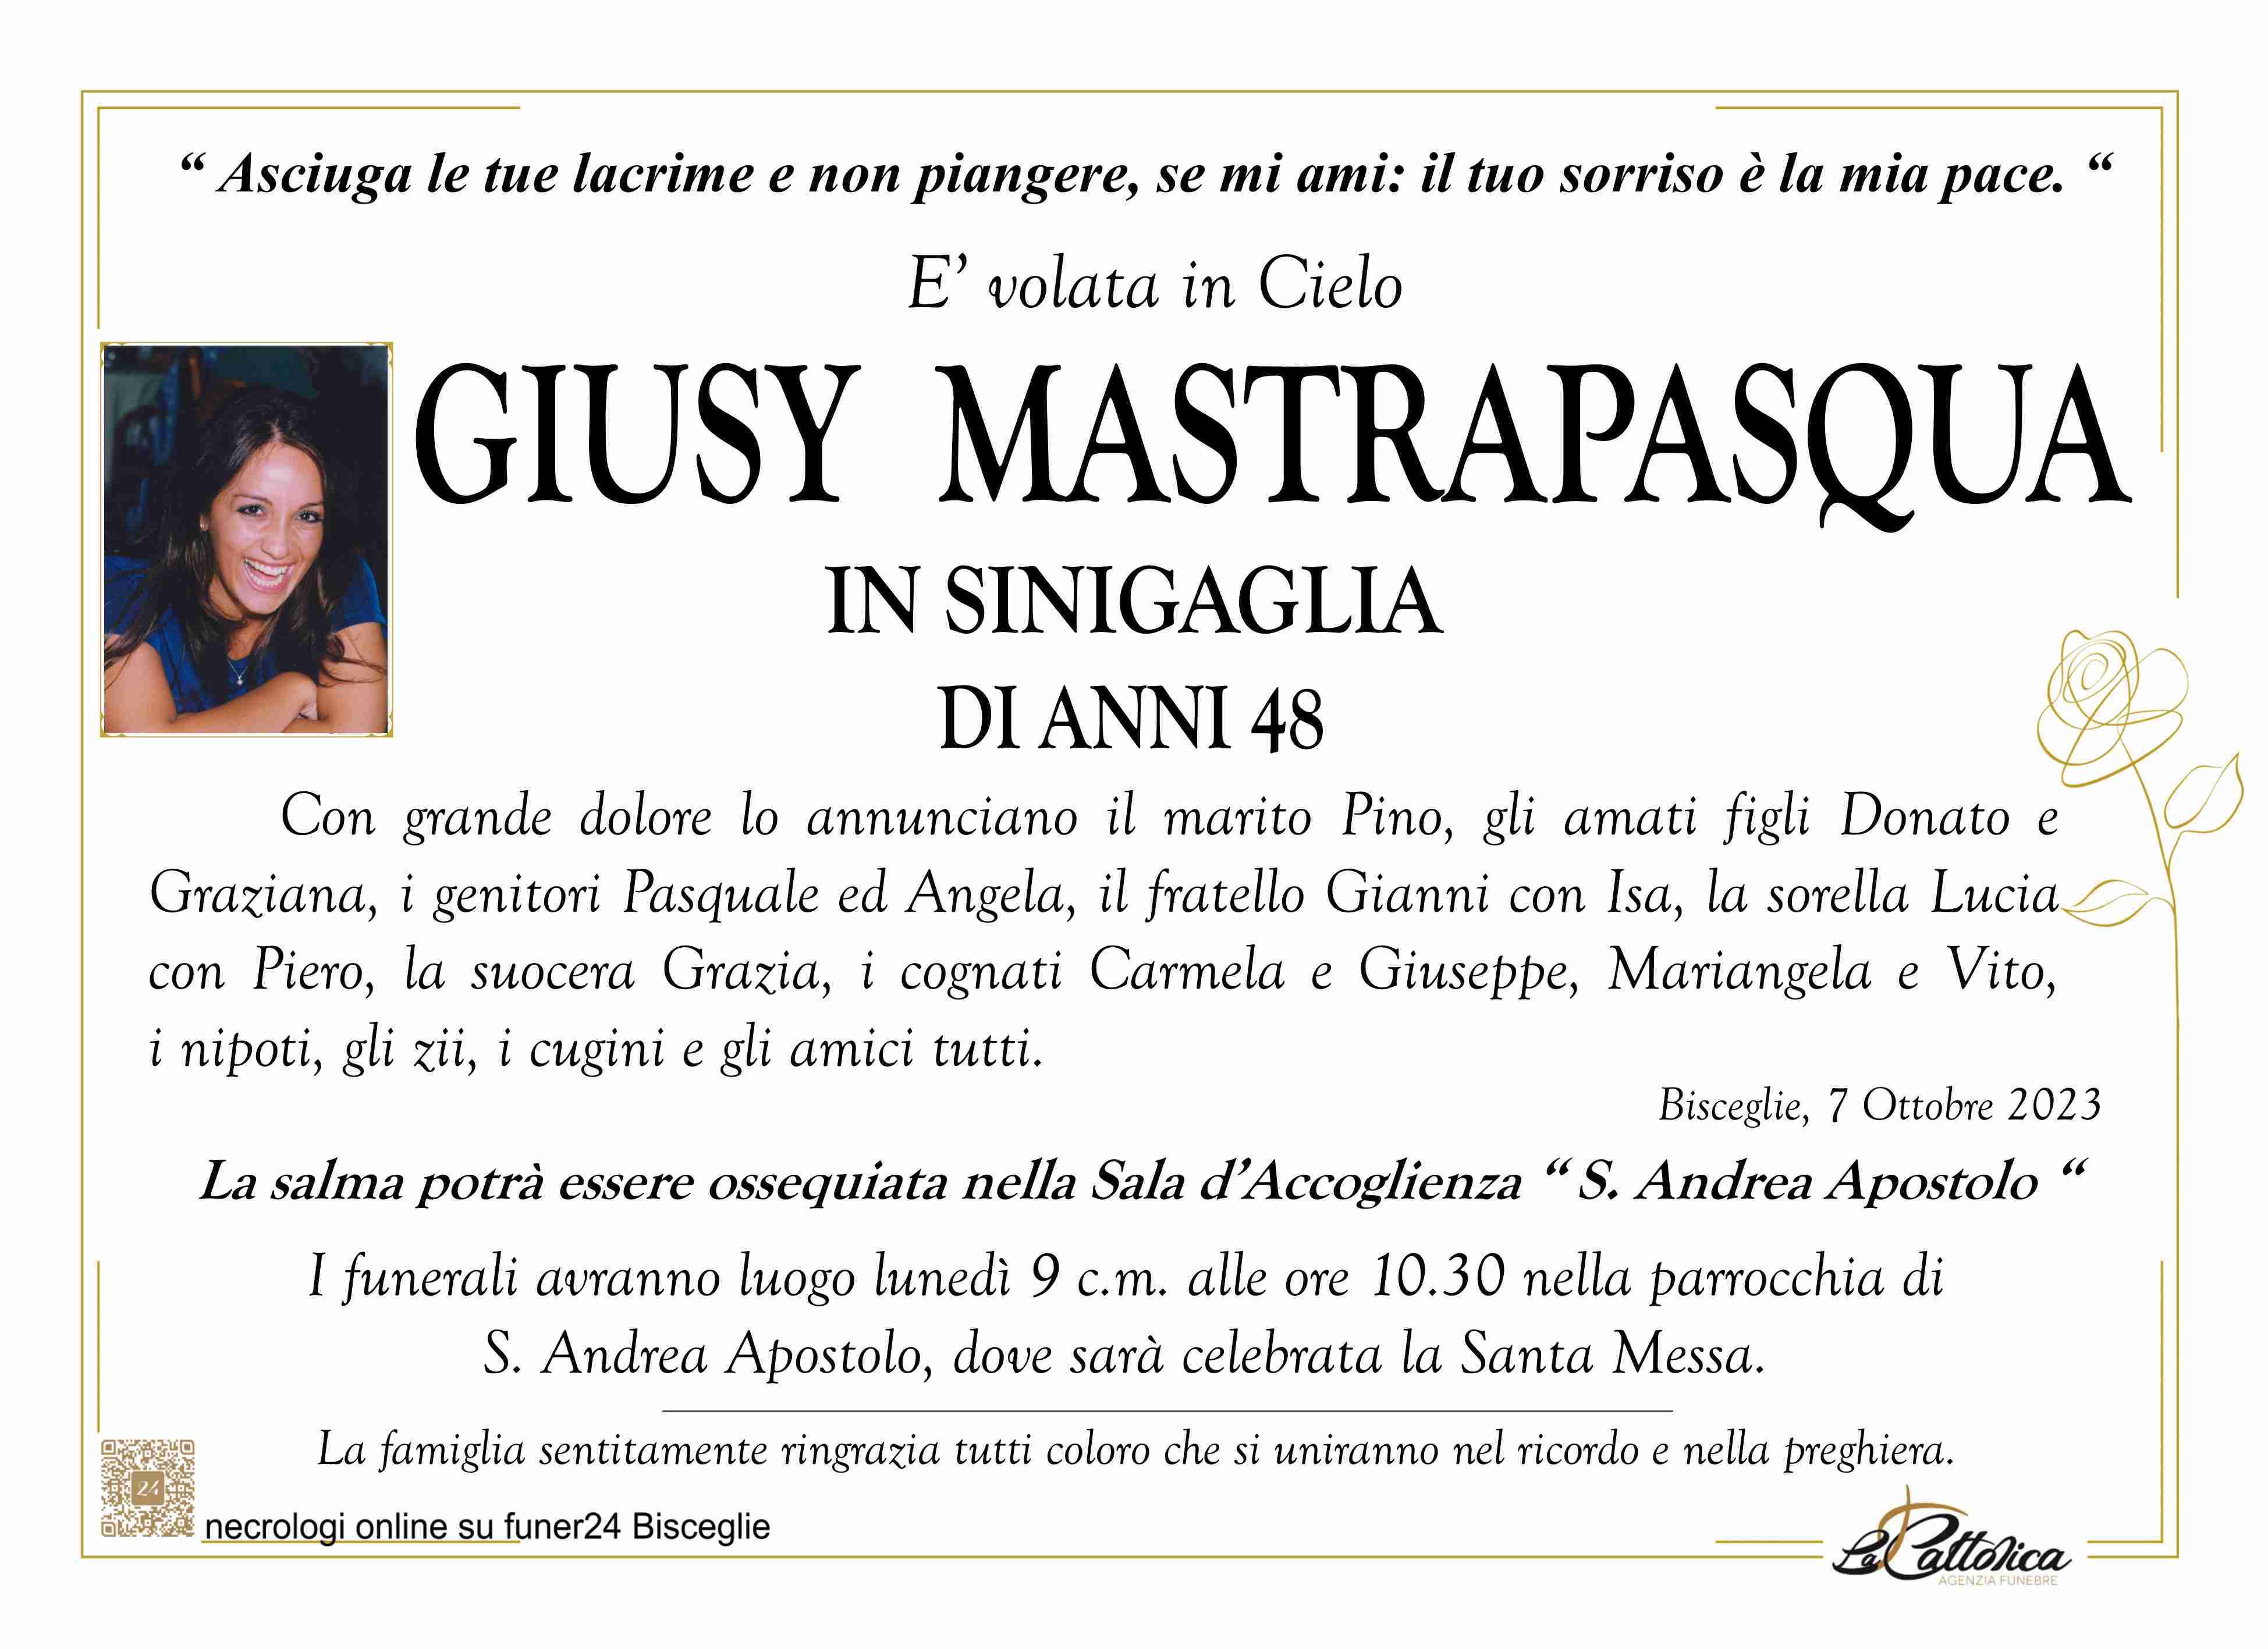 Giusy Mastrapasqua